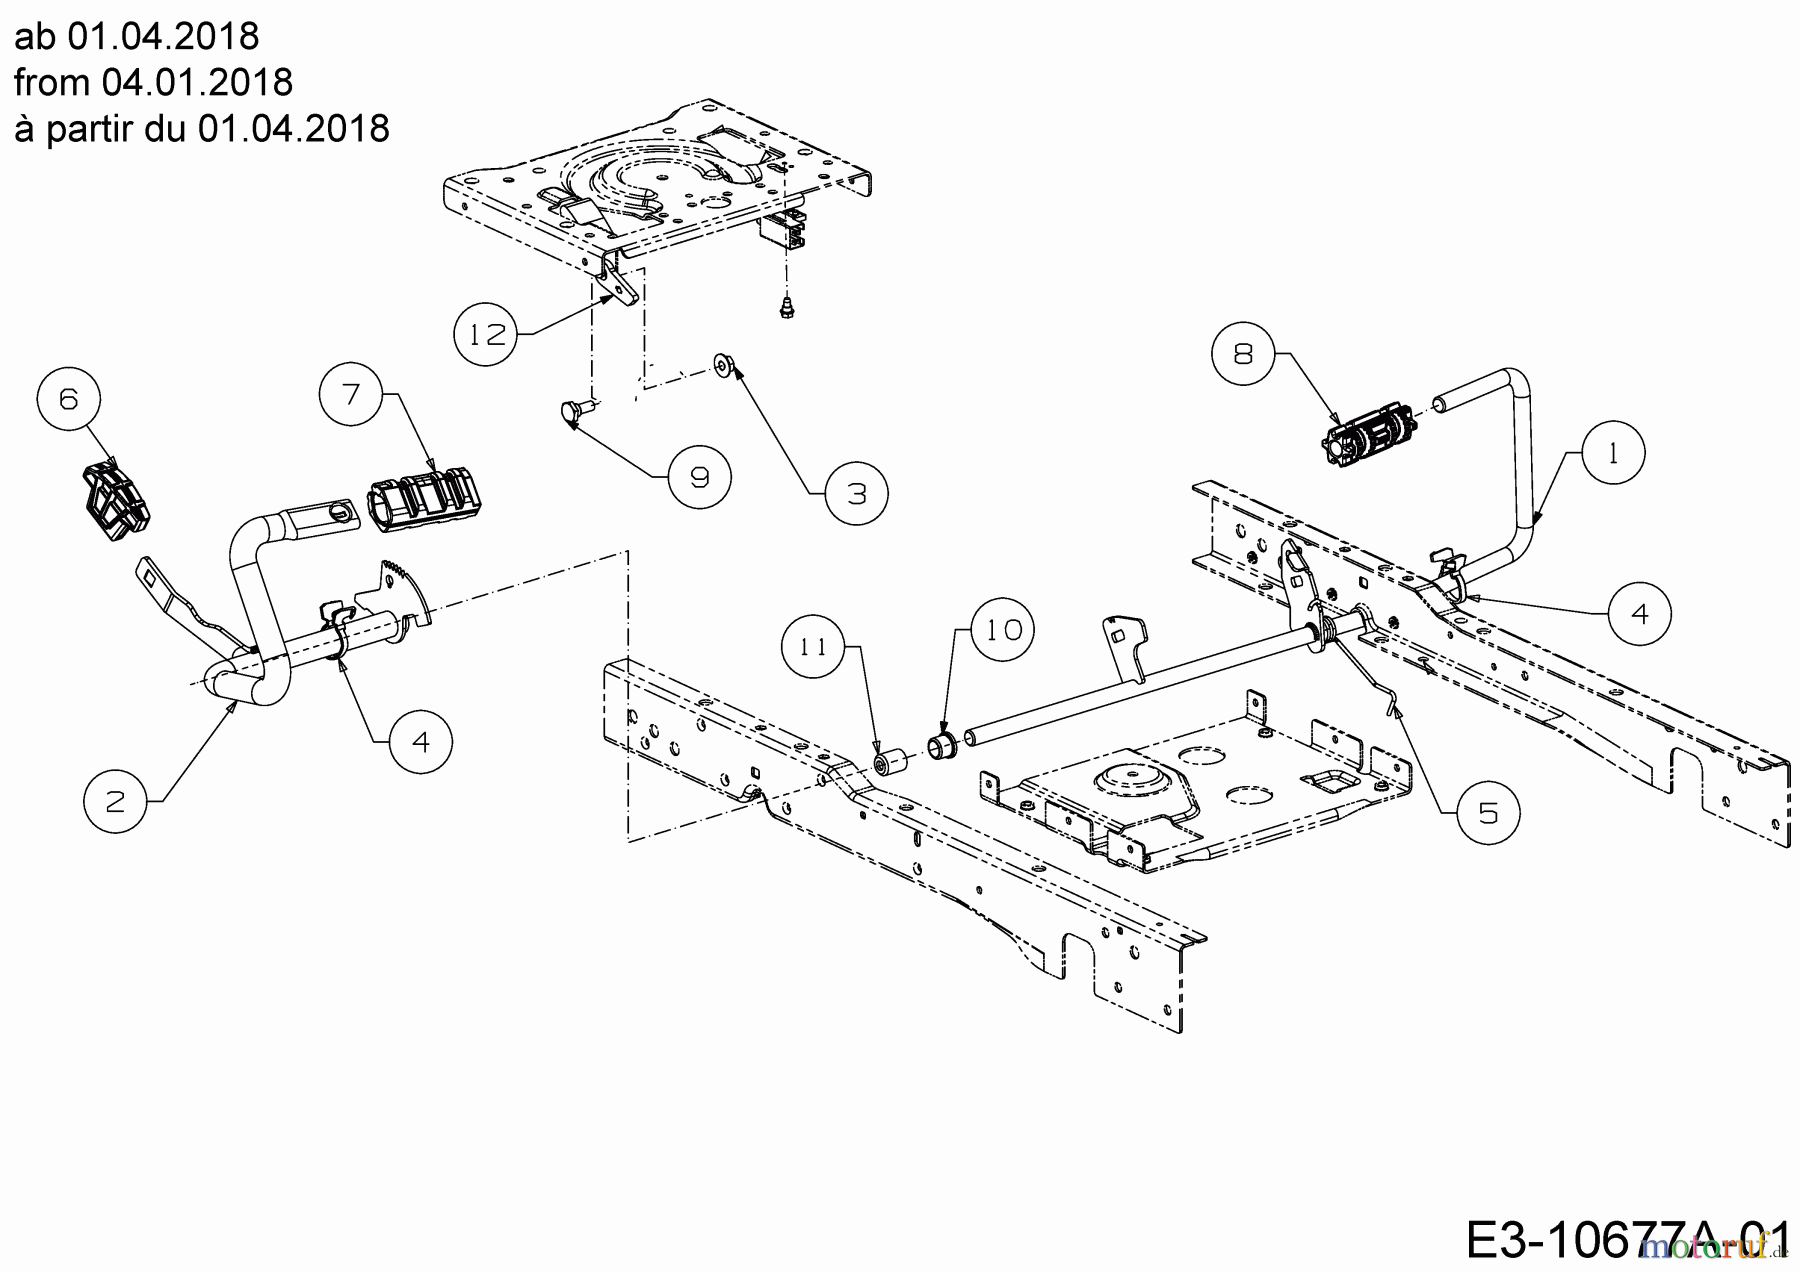  Cub Cadet Lawn tractors XT1 OS107 13C8A1CS603 (2021) Pedals from 04.01.2018